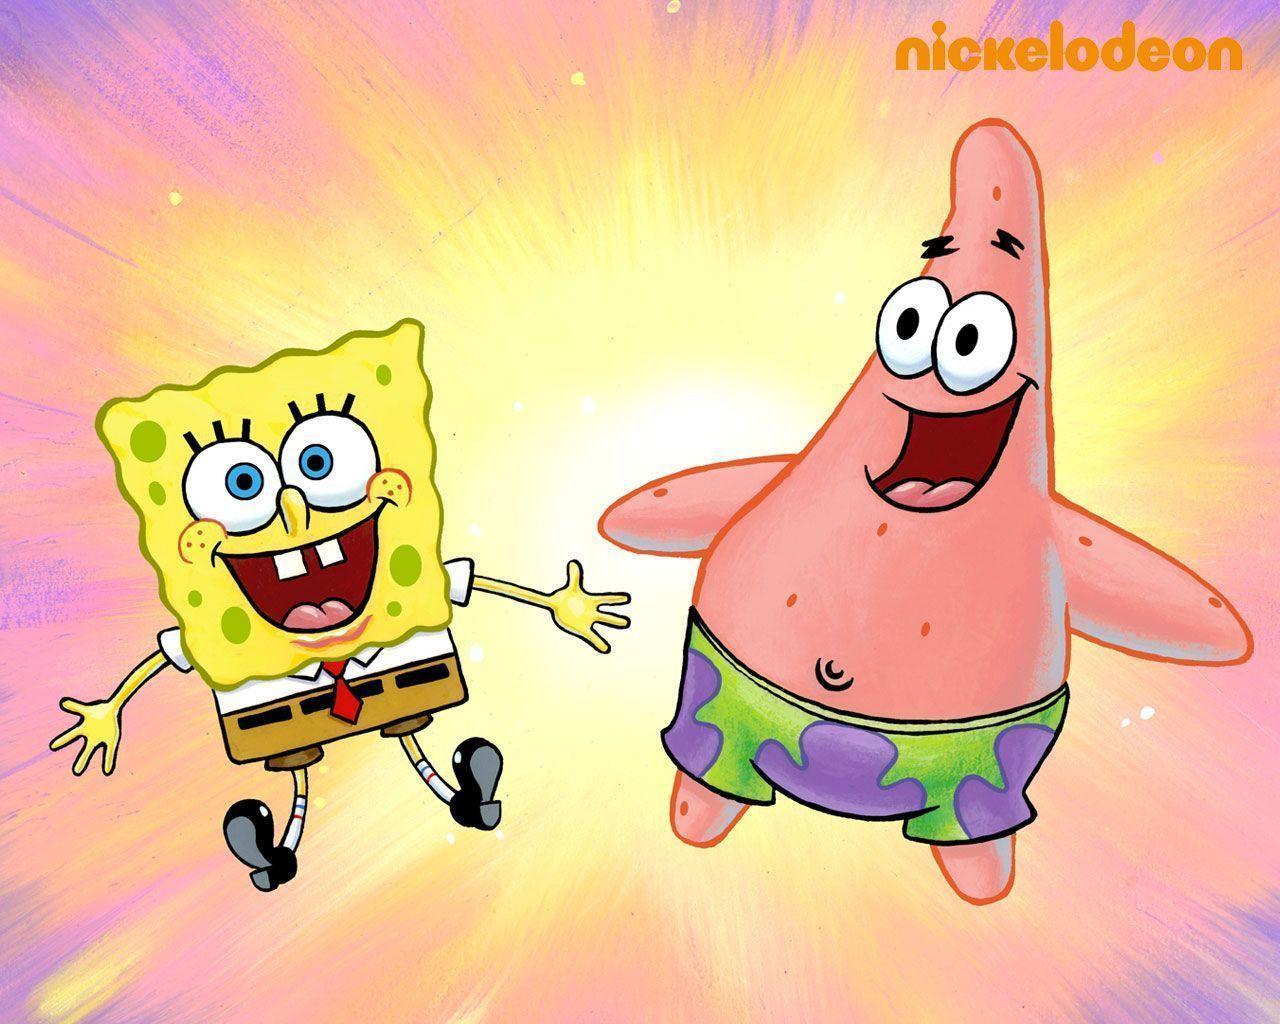 Spongebob & Patrick Squarepants Wallpaper 31281721